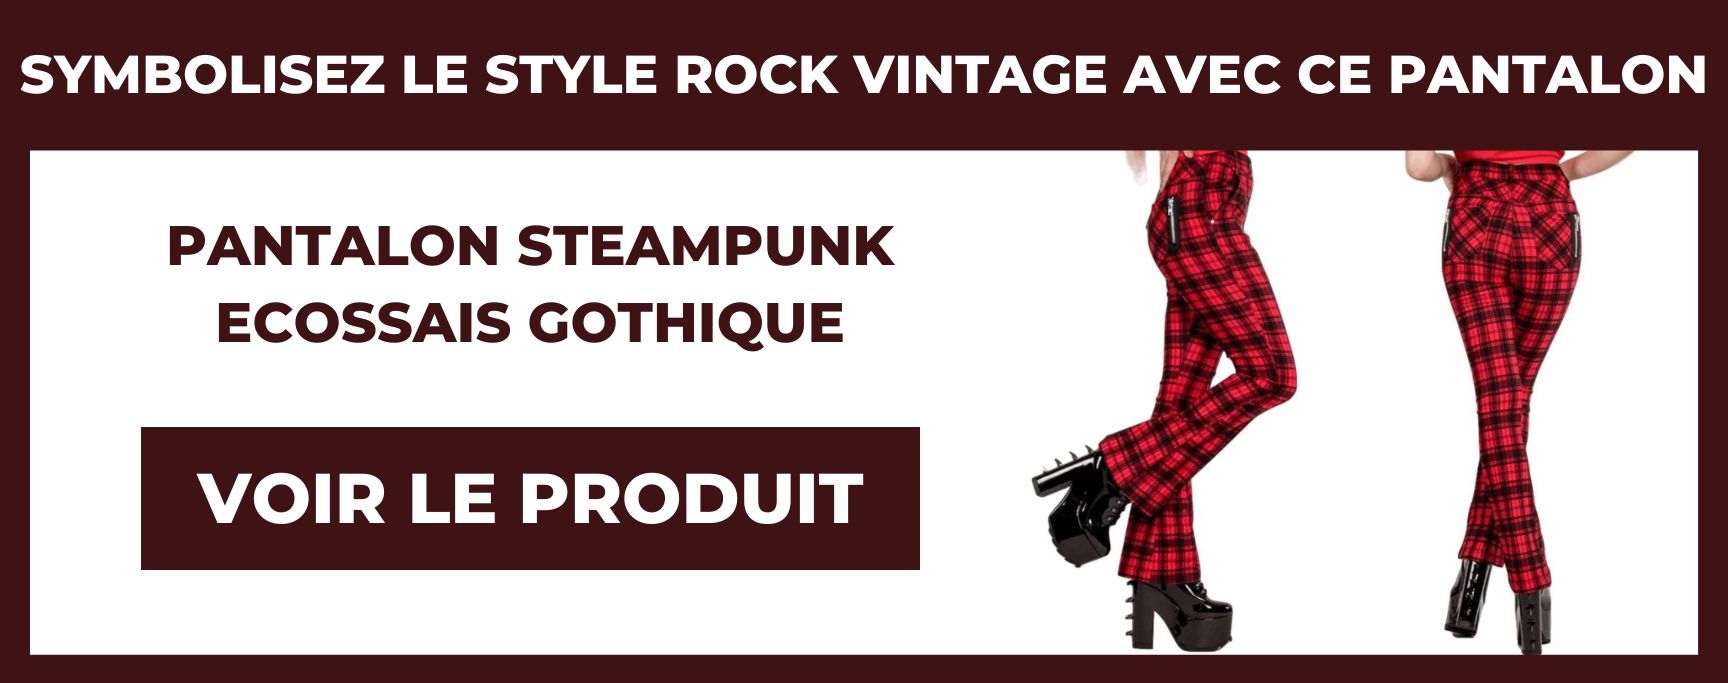 pantalon steampunk ecossais gothique